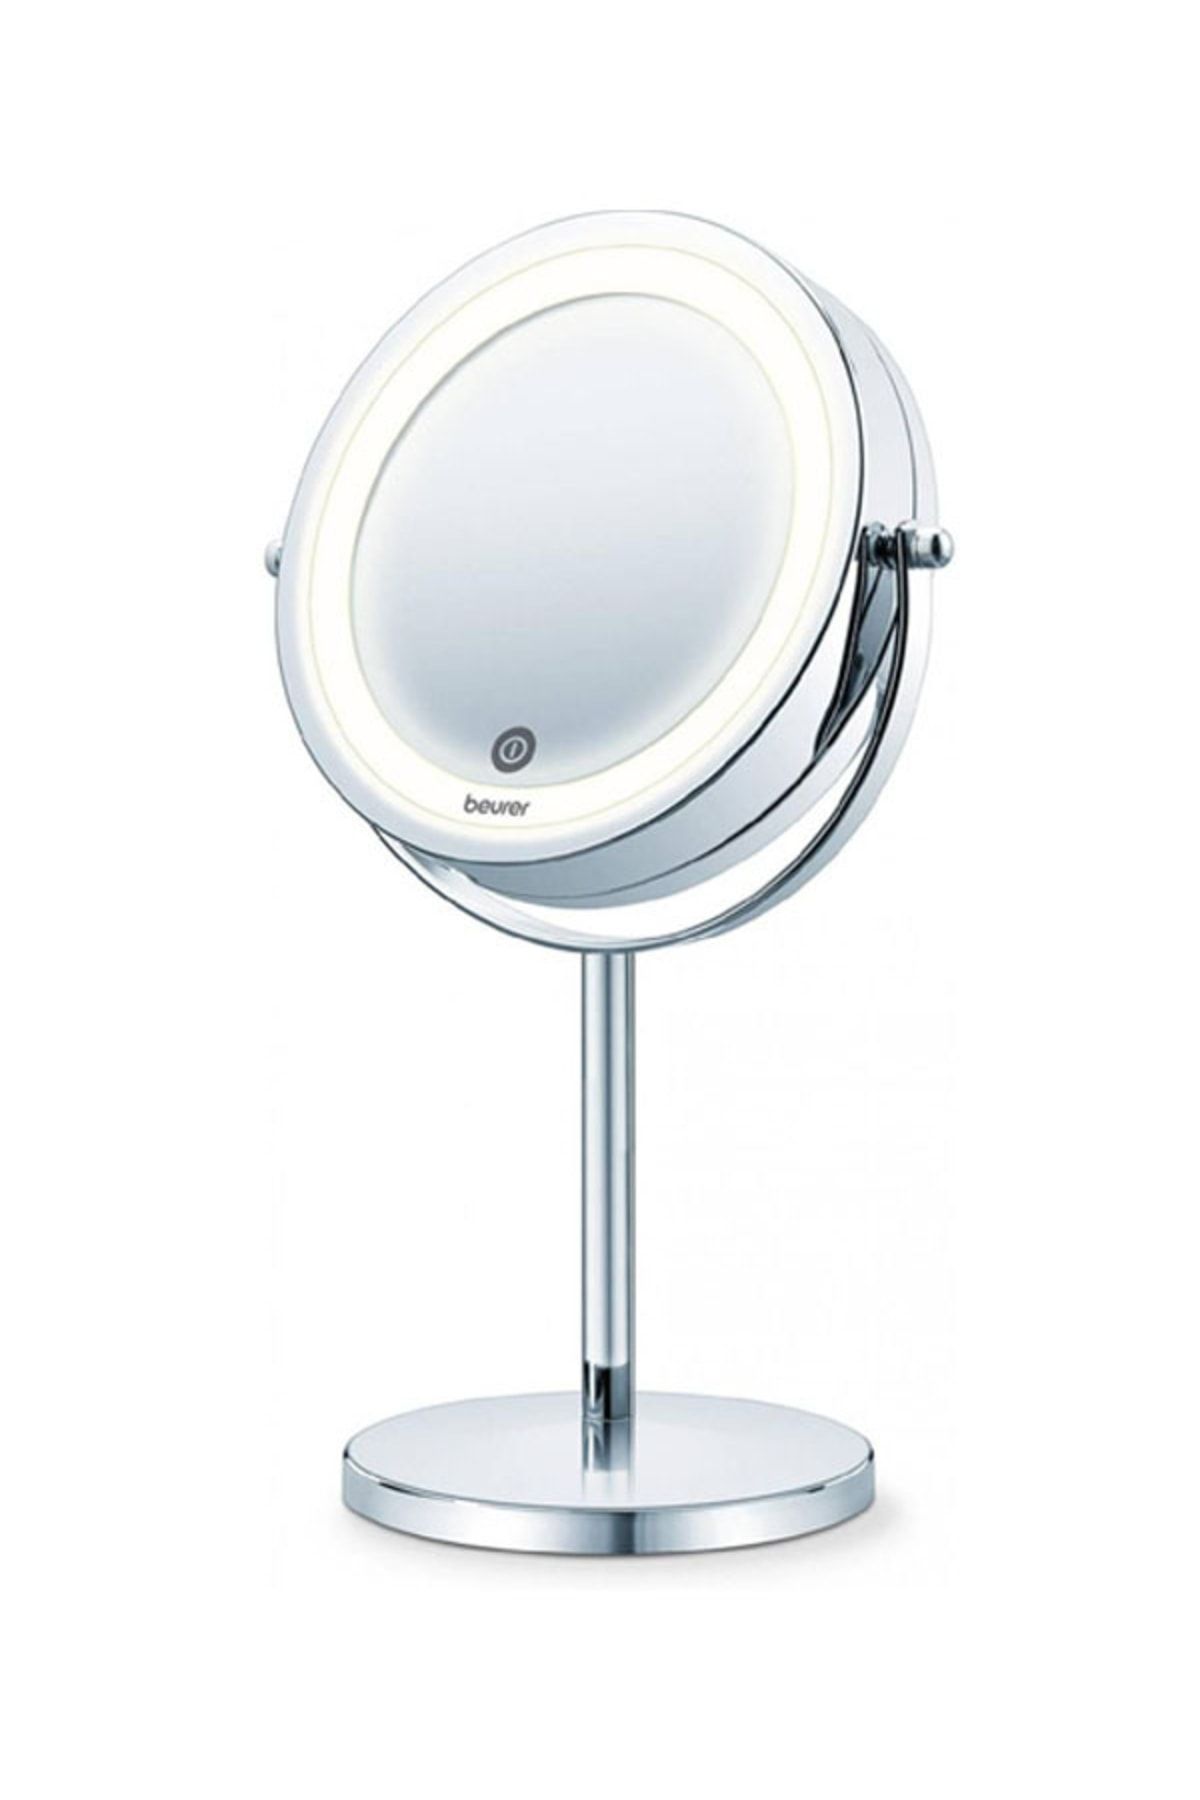 Beurer Bs 55 Led Işıklı Makyaj Aynası 7 Kat Büyütme